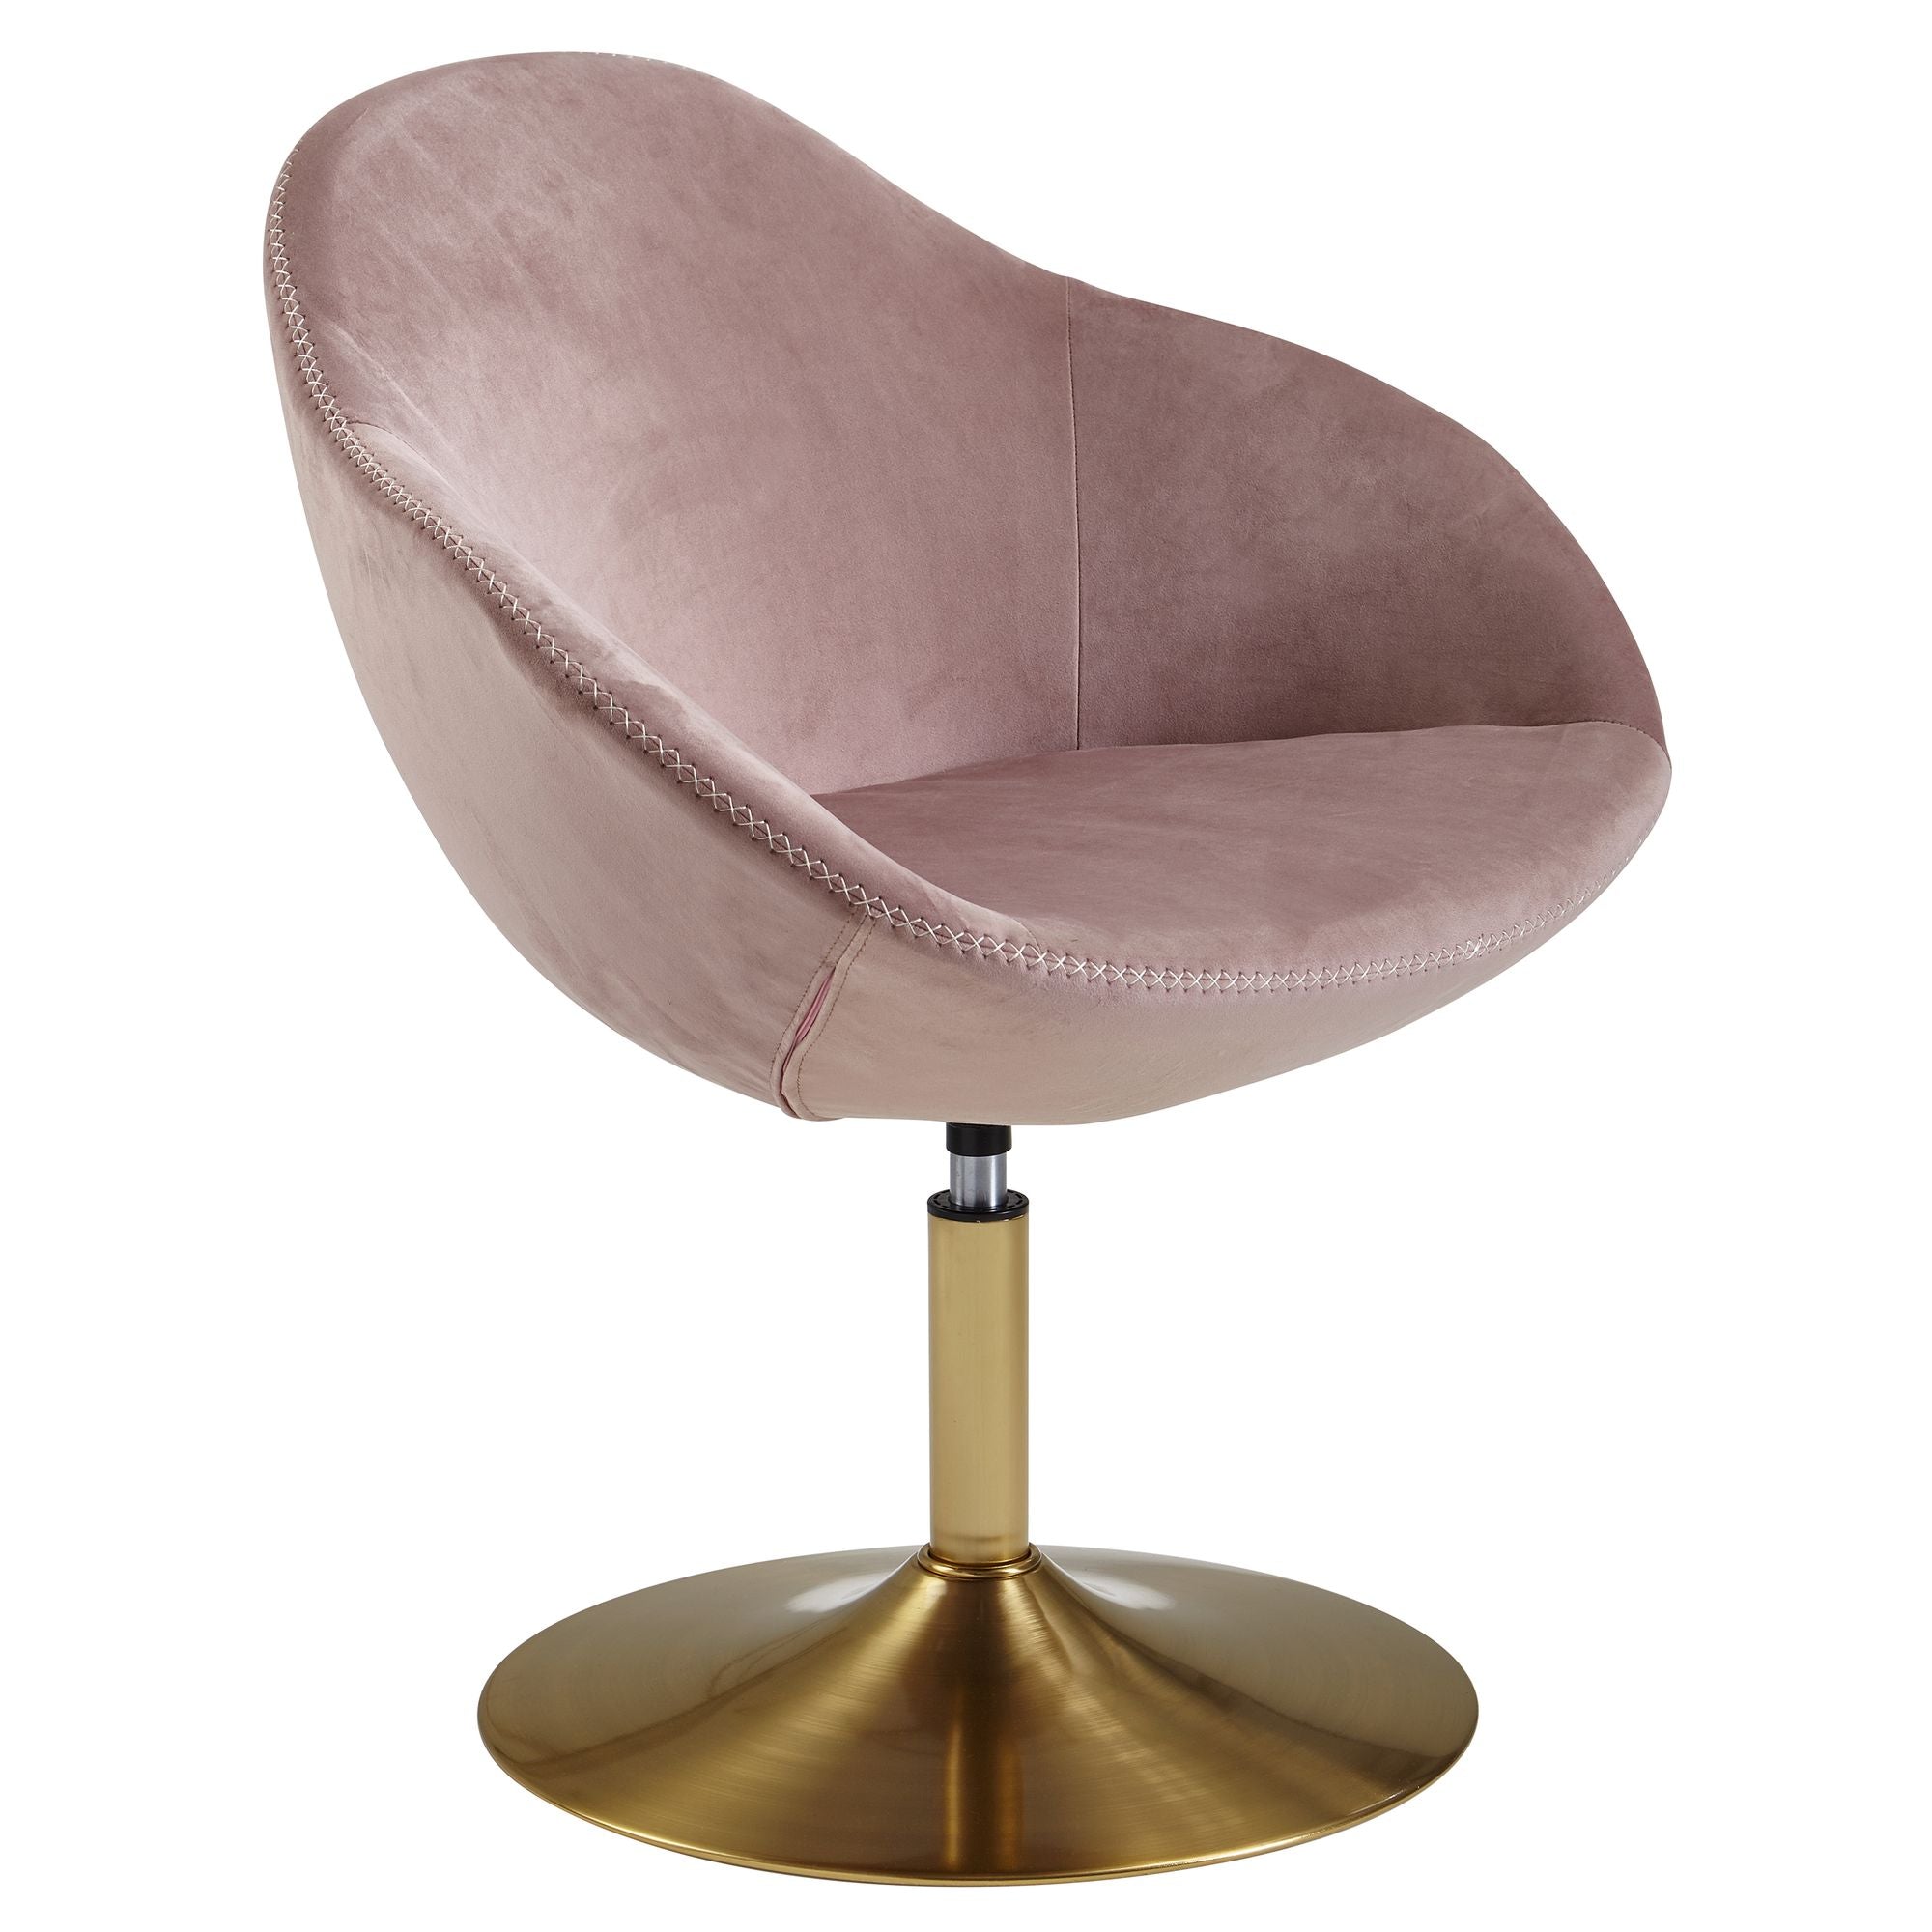 Nancy's Sherman Lounge Chair - Fauteuil Relax - Fauteuil - Chaise de bureau - Chaise baquet - Velours - Rose